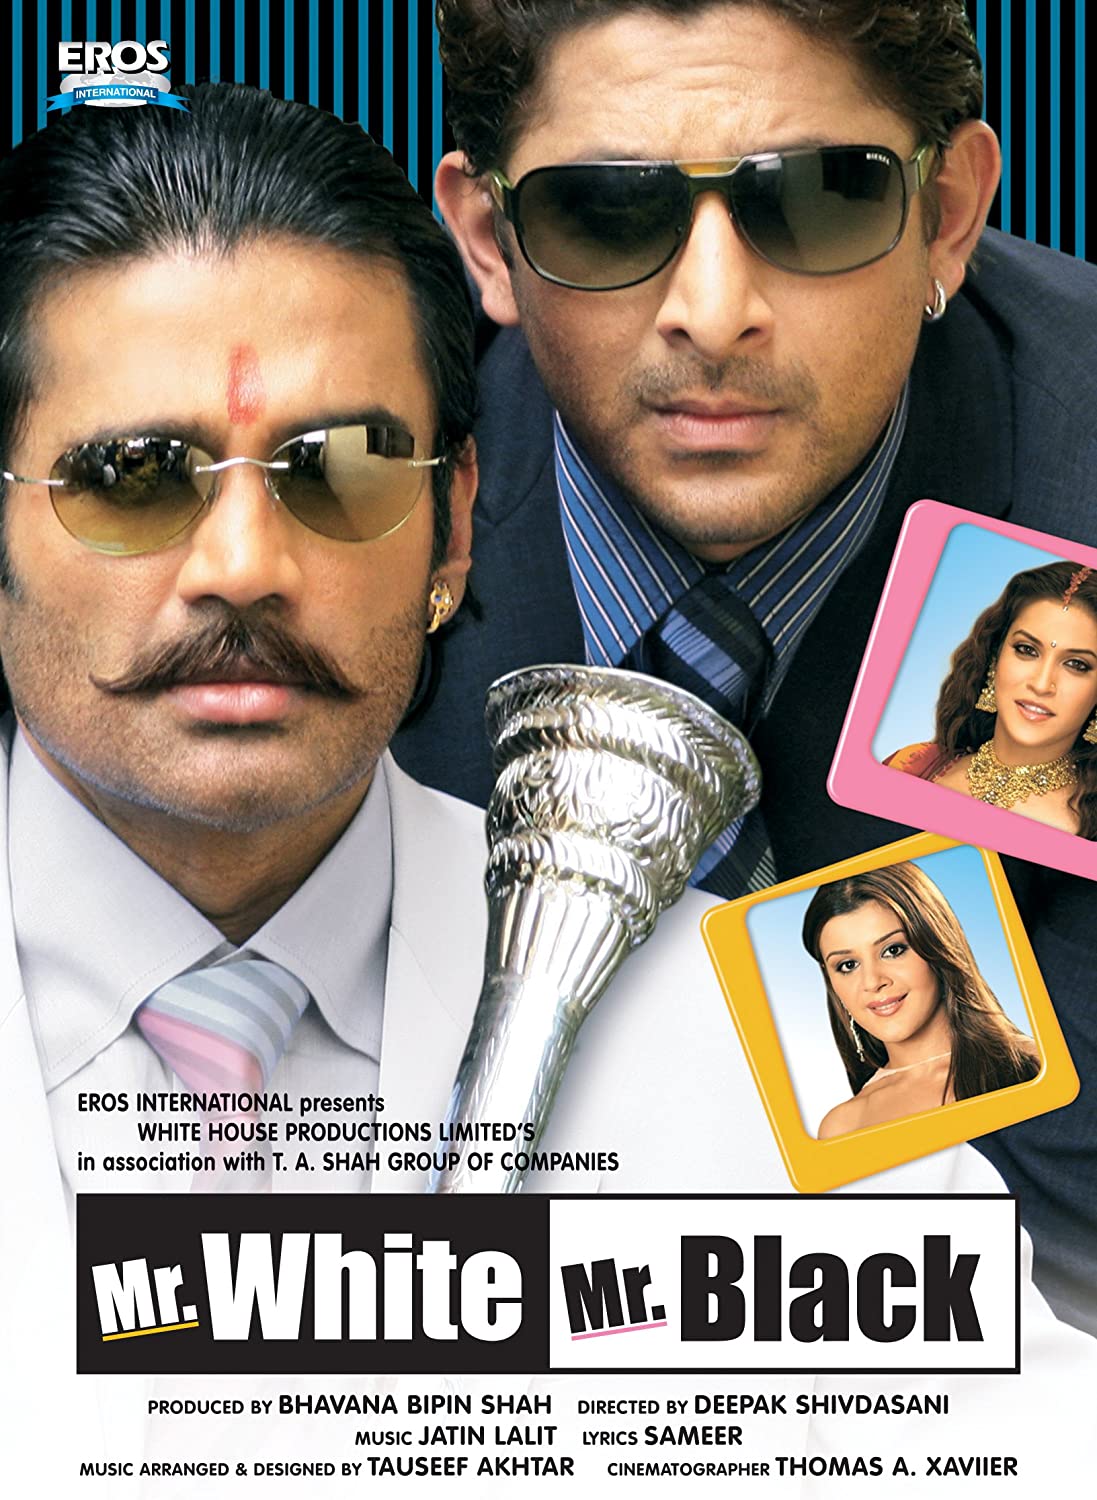 Mr Black Mr White 2008 5882 Poster.jpg